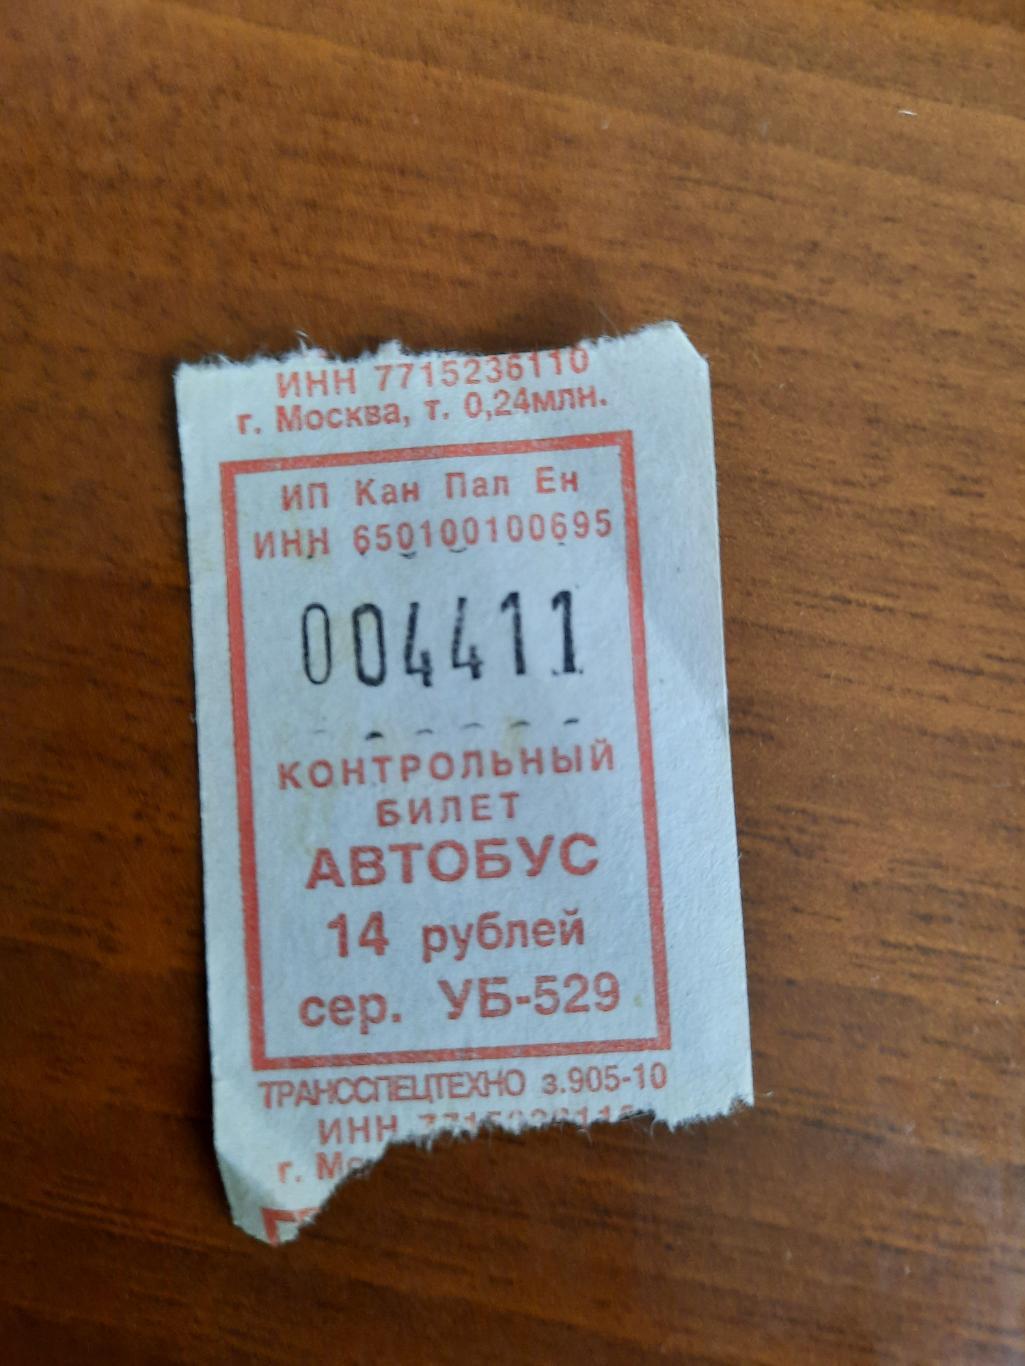 Автобусный билет с интересным номером 004411